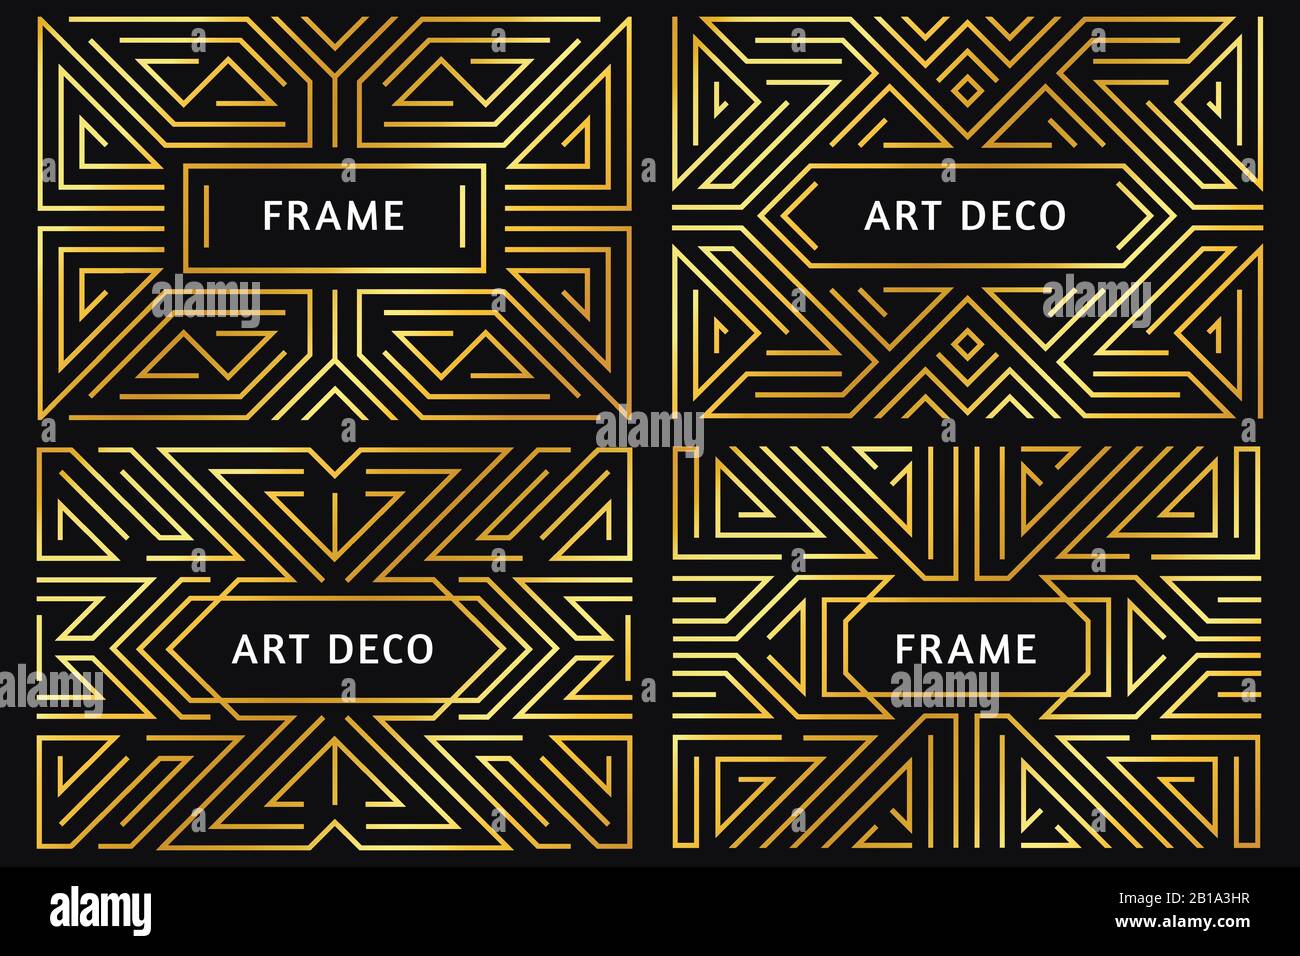 Art-Deco-Rahmen. Vintage Golden Line Border, dekoratives Goldornament und luxuriöse abstrakte geometrische Rahmen Rahmen Vektorgrafiken Stock Vektor